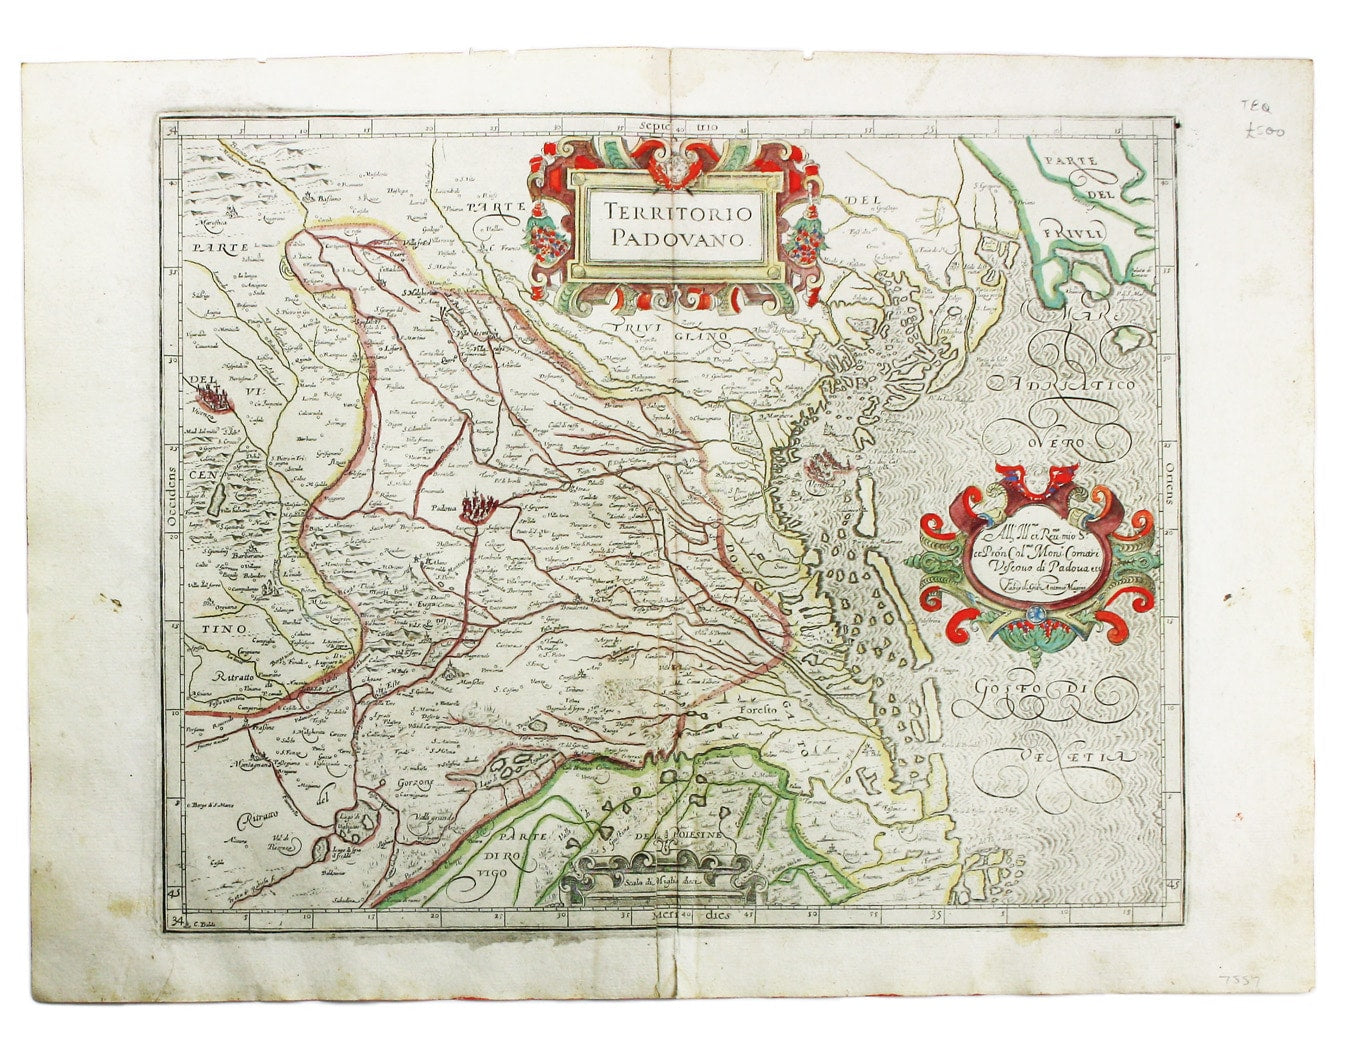 Magini’s map of Padua